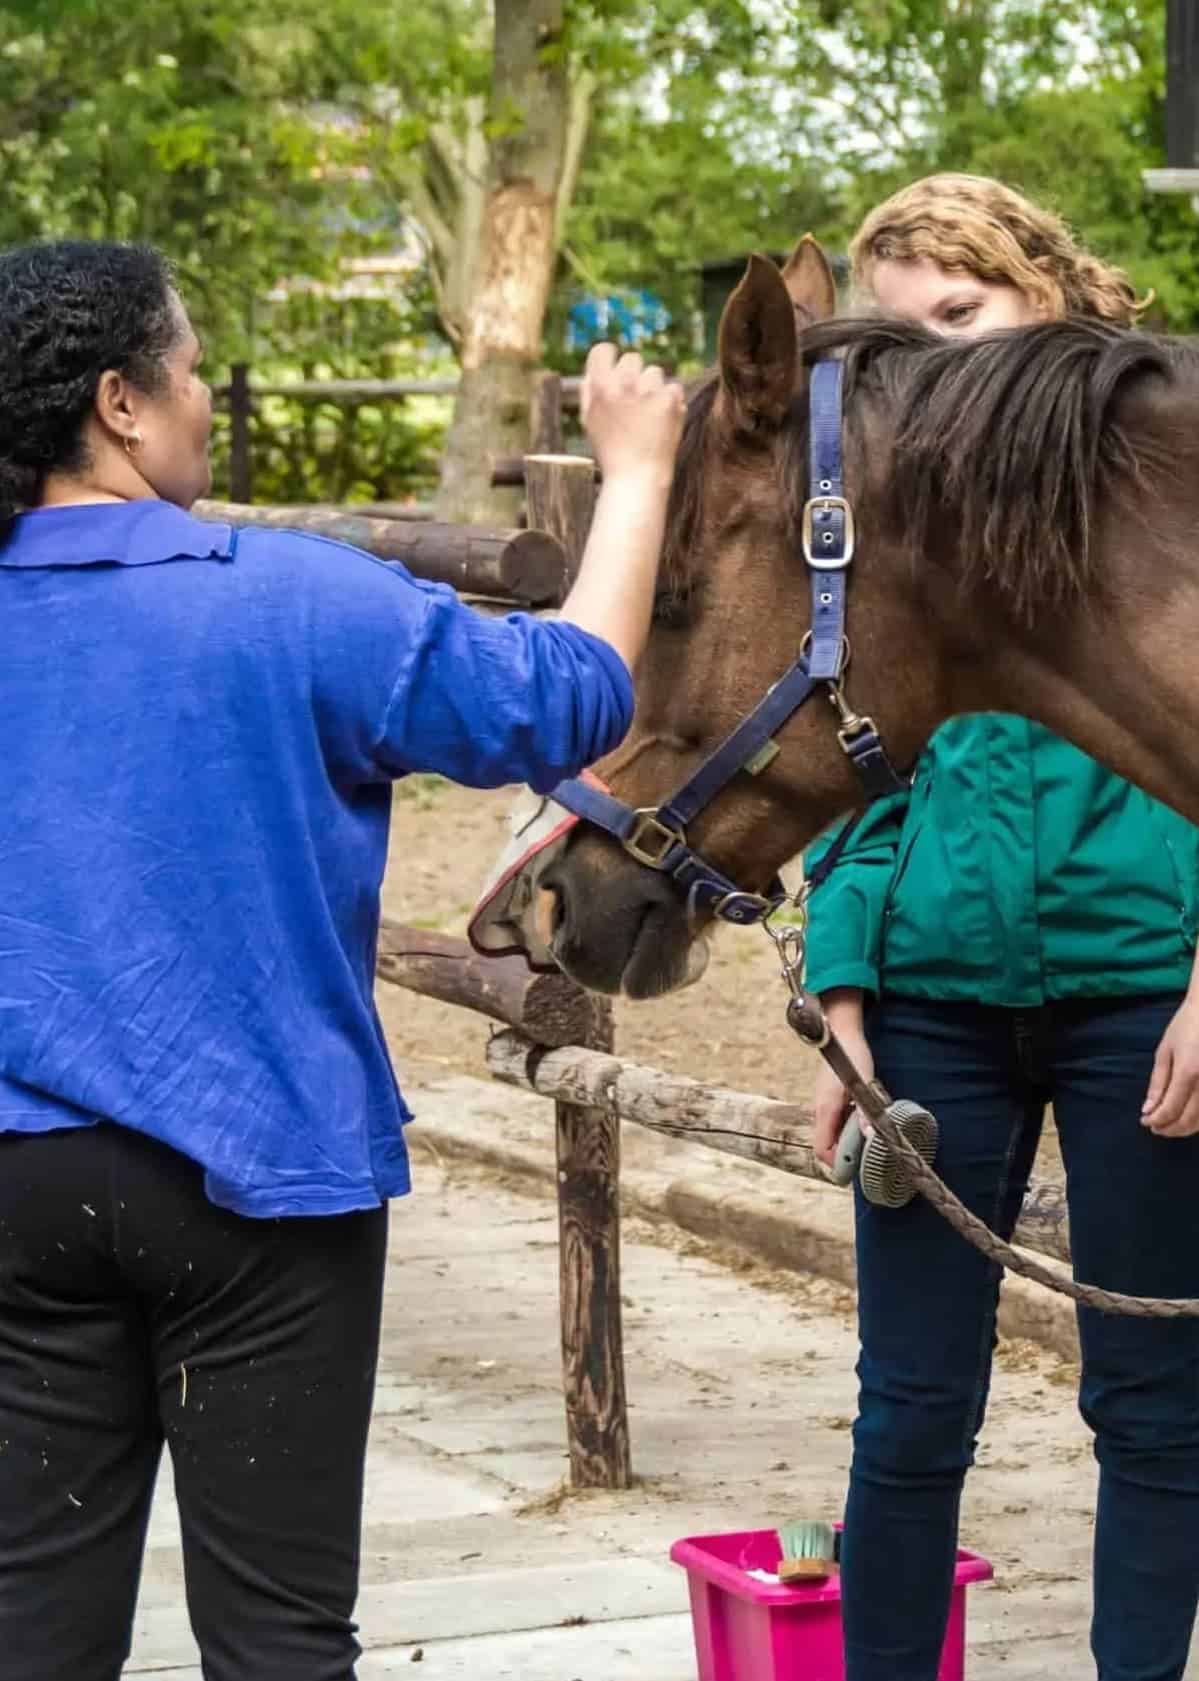 Vorm van paardencoaching met behulp van paarden